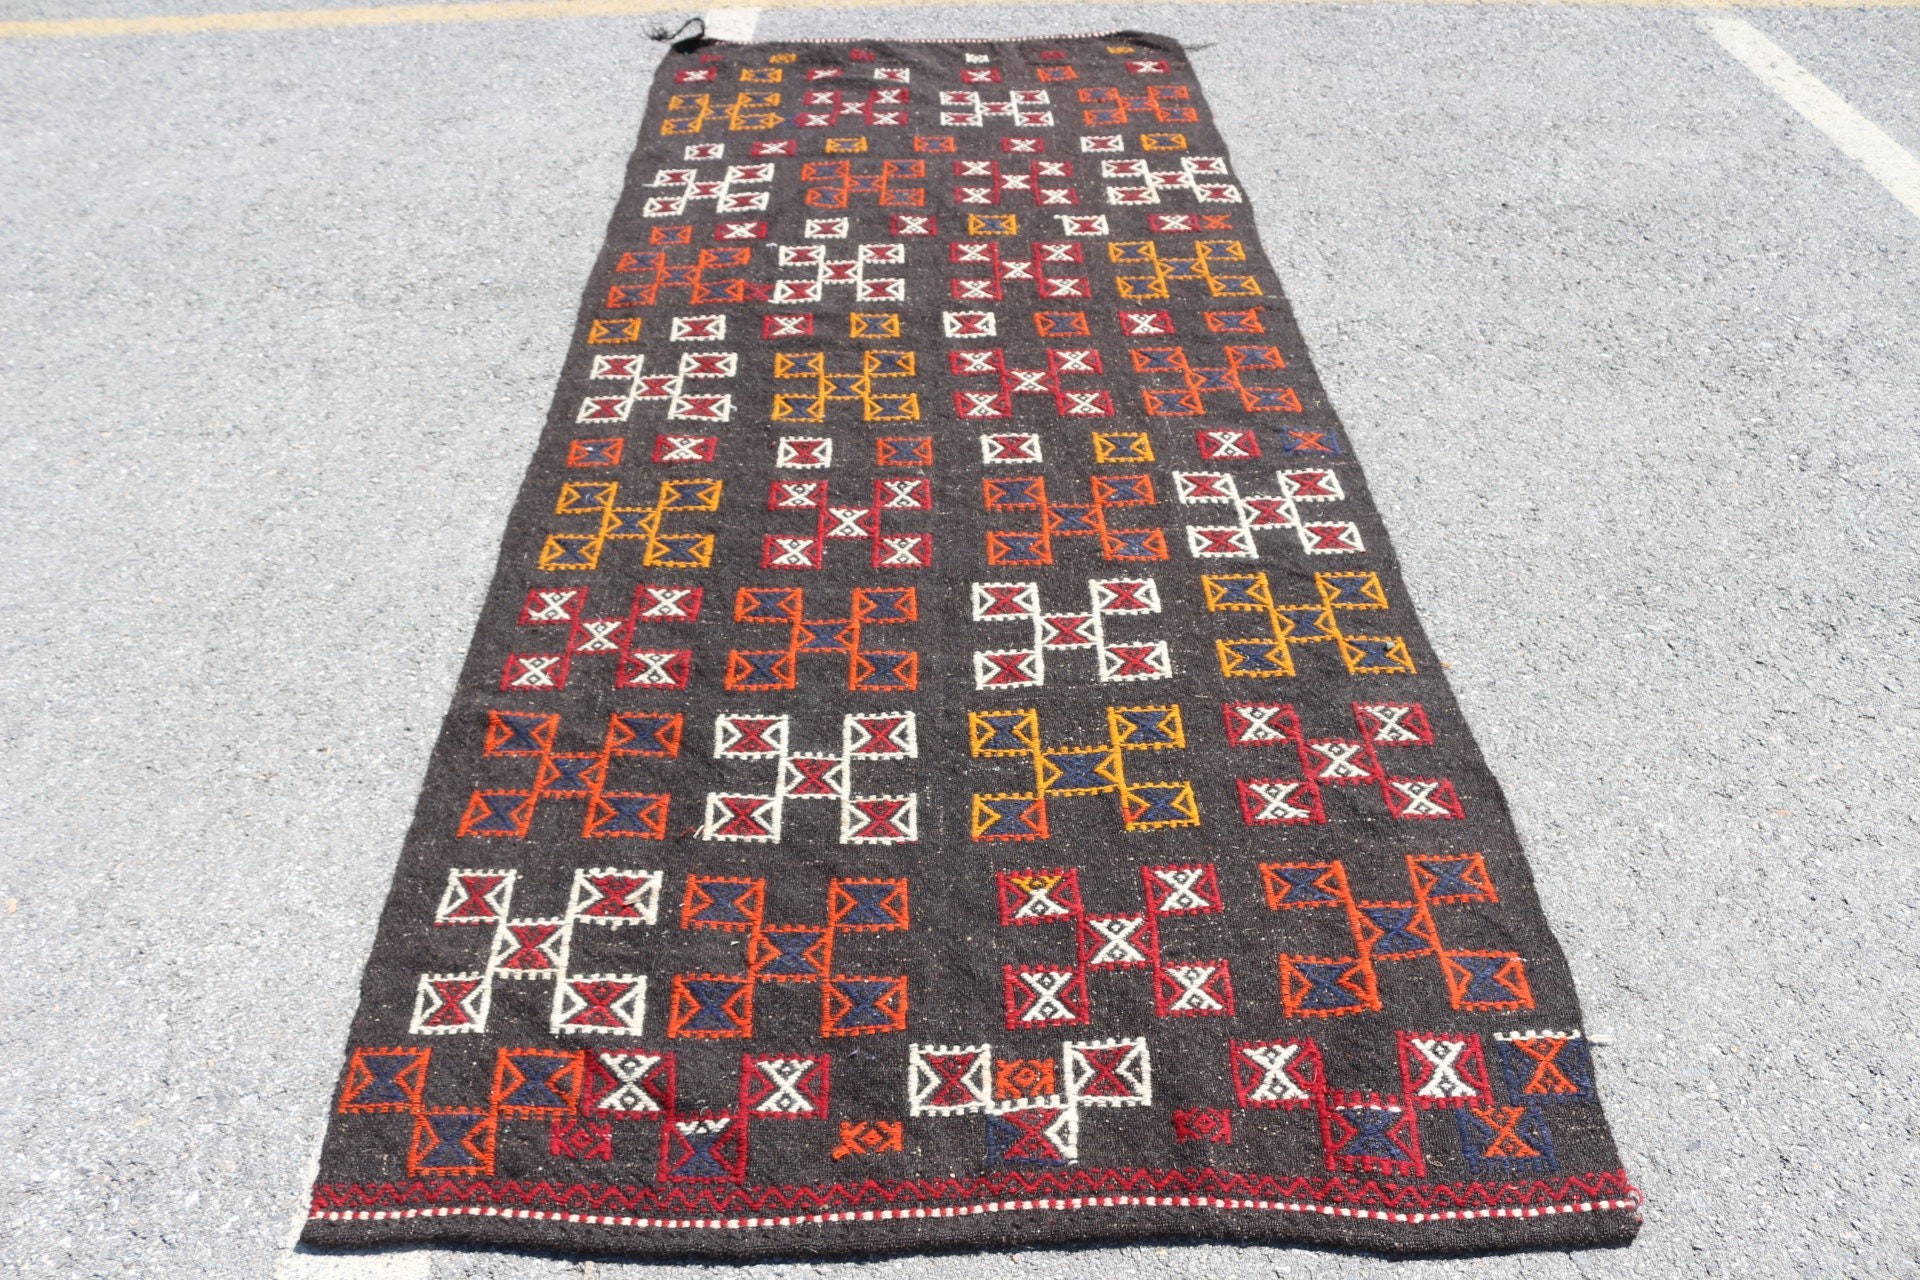 Vintage Rug, Bedroom Rugs, Tribal Rugs, Rugs for Kitchen, Turkish Rugs, 4x10.5 ft Runner Rugs, Black Cool Rug, Hallway Rug